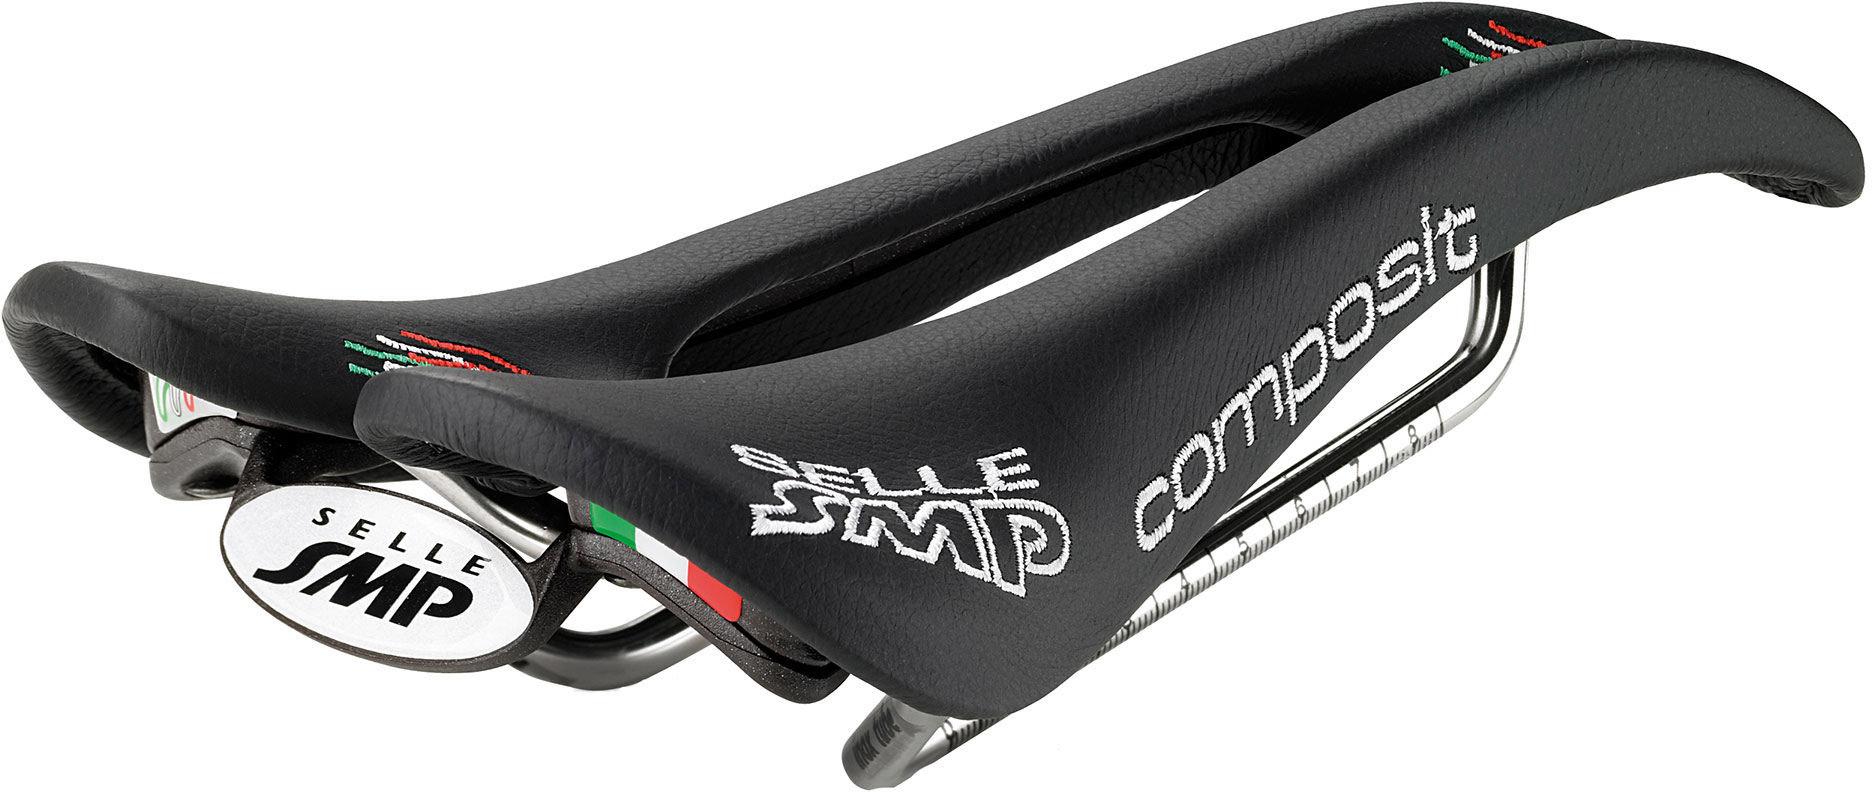 Selle Smp Composite Bike Saddle  Black